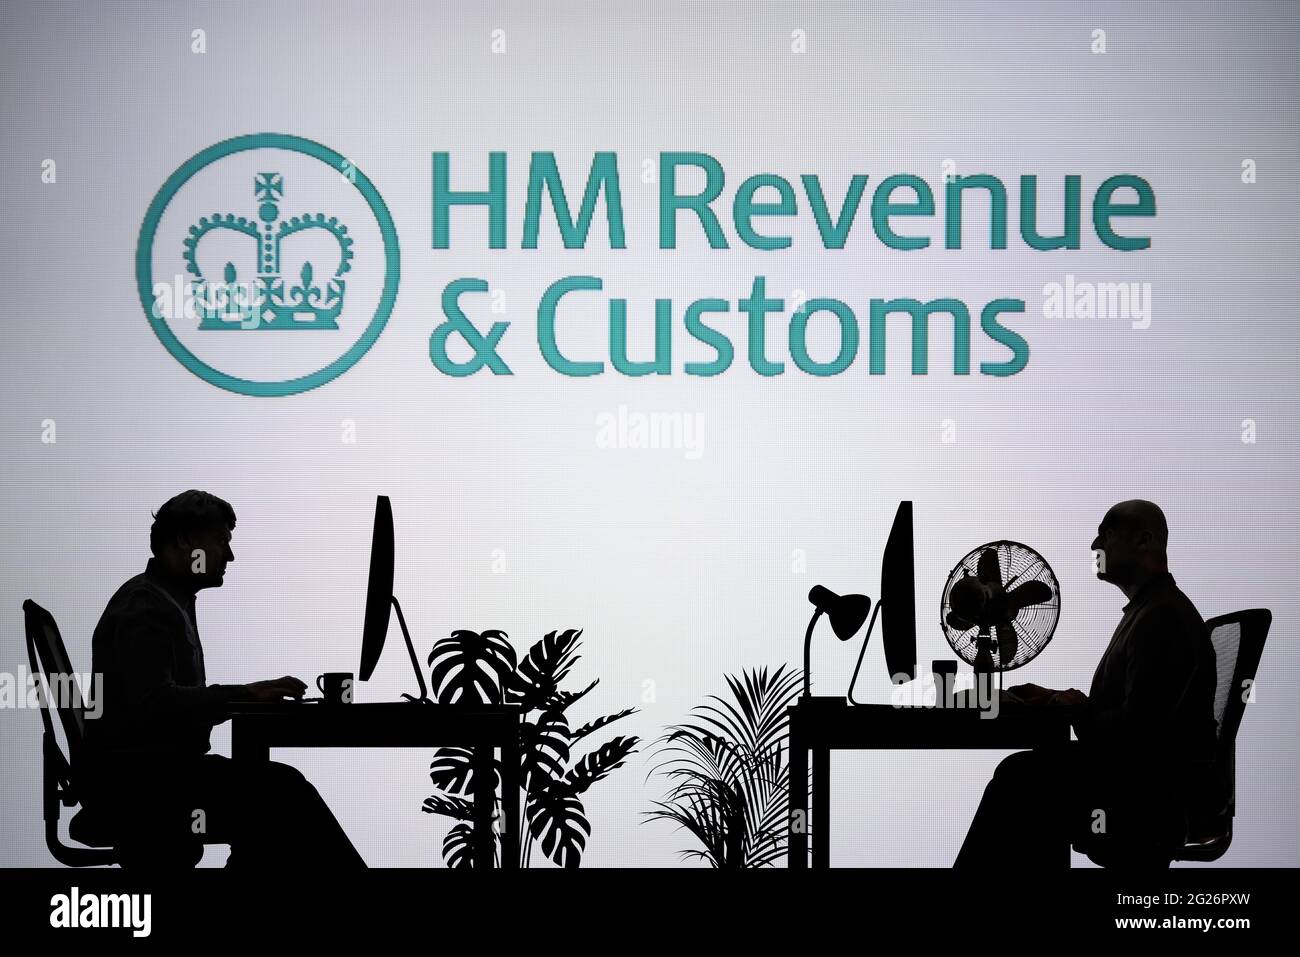 Le logo HMRC est visible sur un écran LED en arrière-plan tandis que deux personnes silhoueteuses travaillent dans un environnement de bureau (usage éditorial uniquement) Banque D'Images